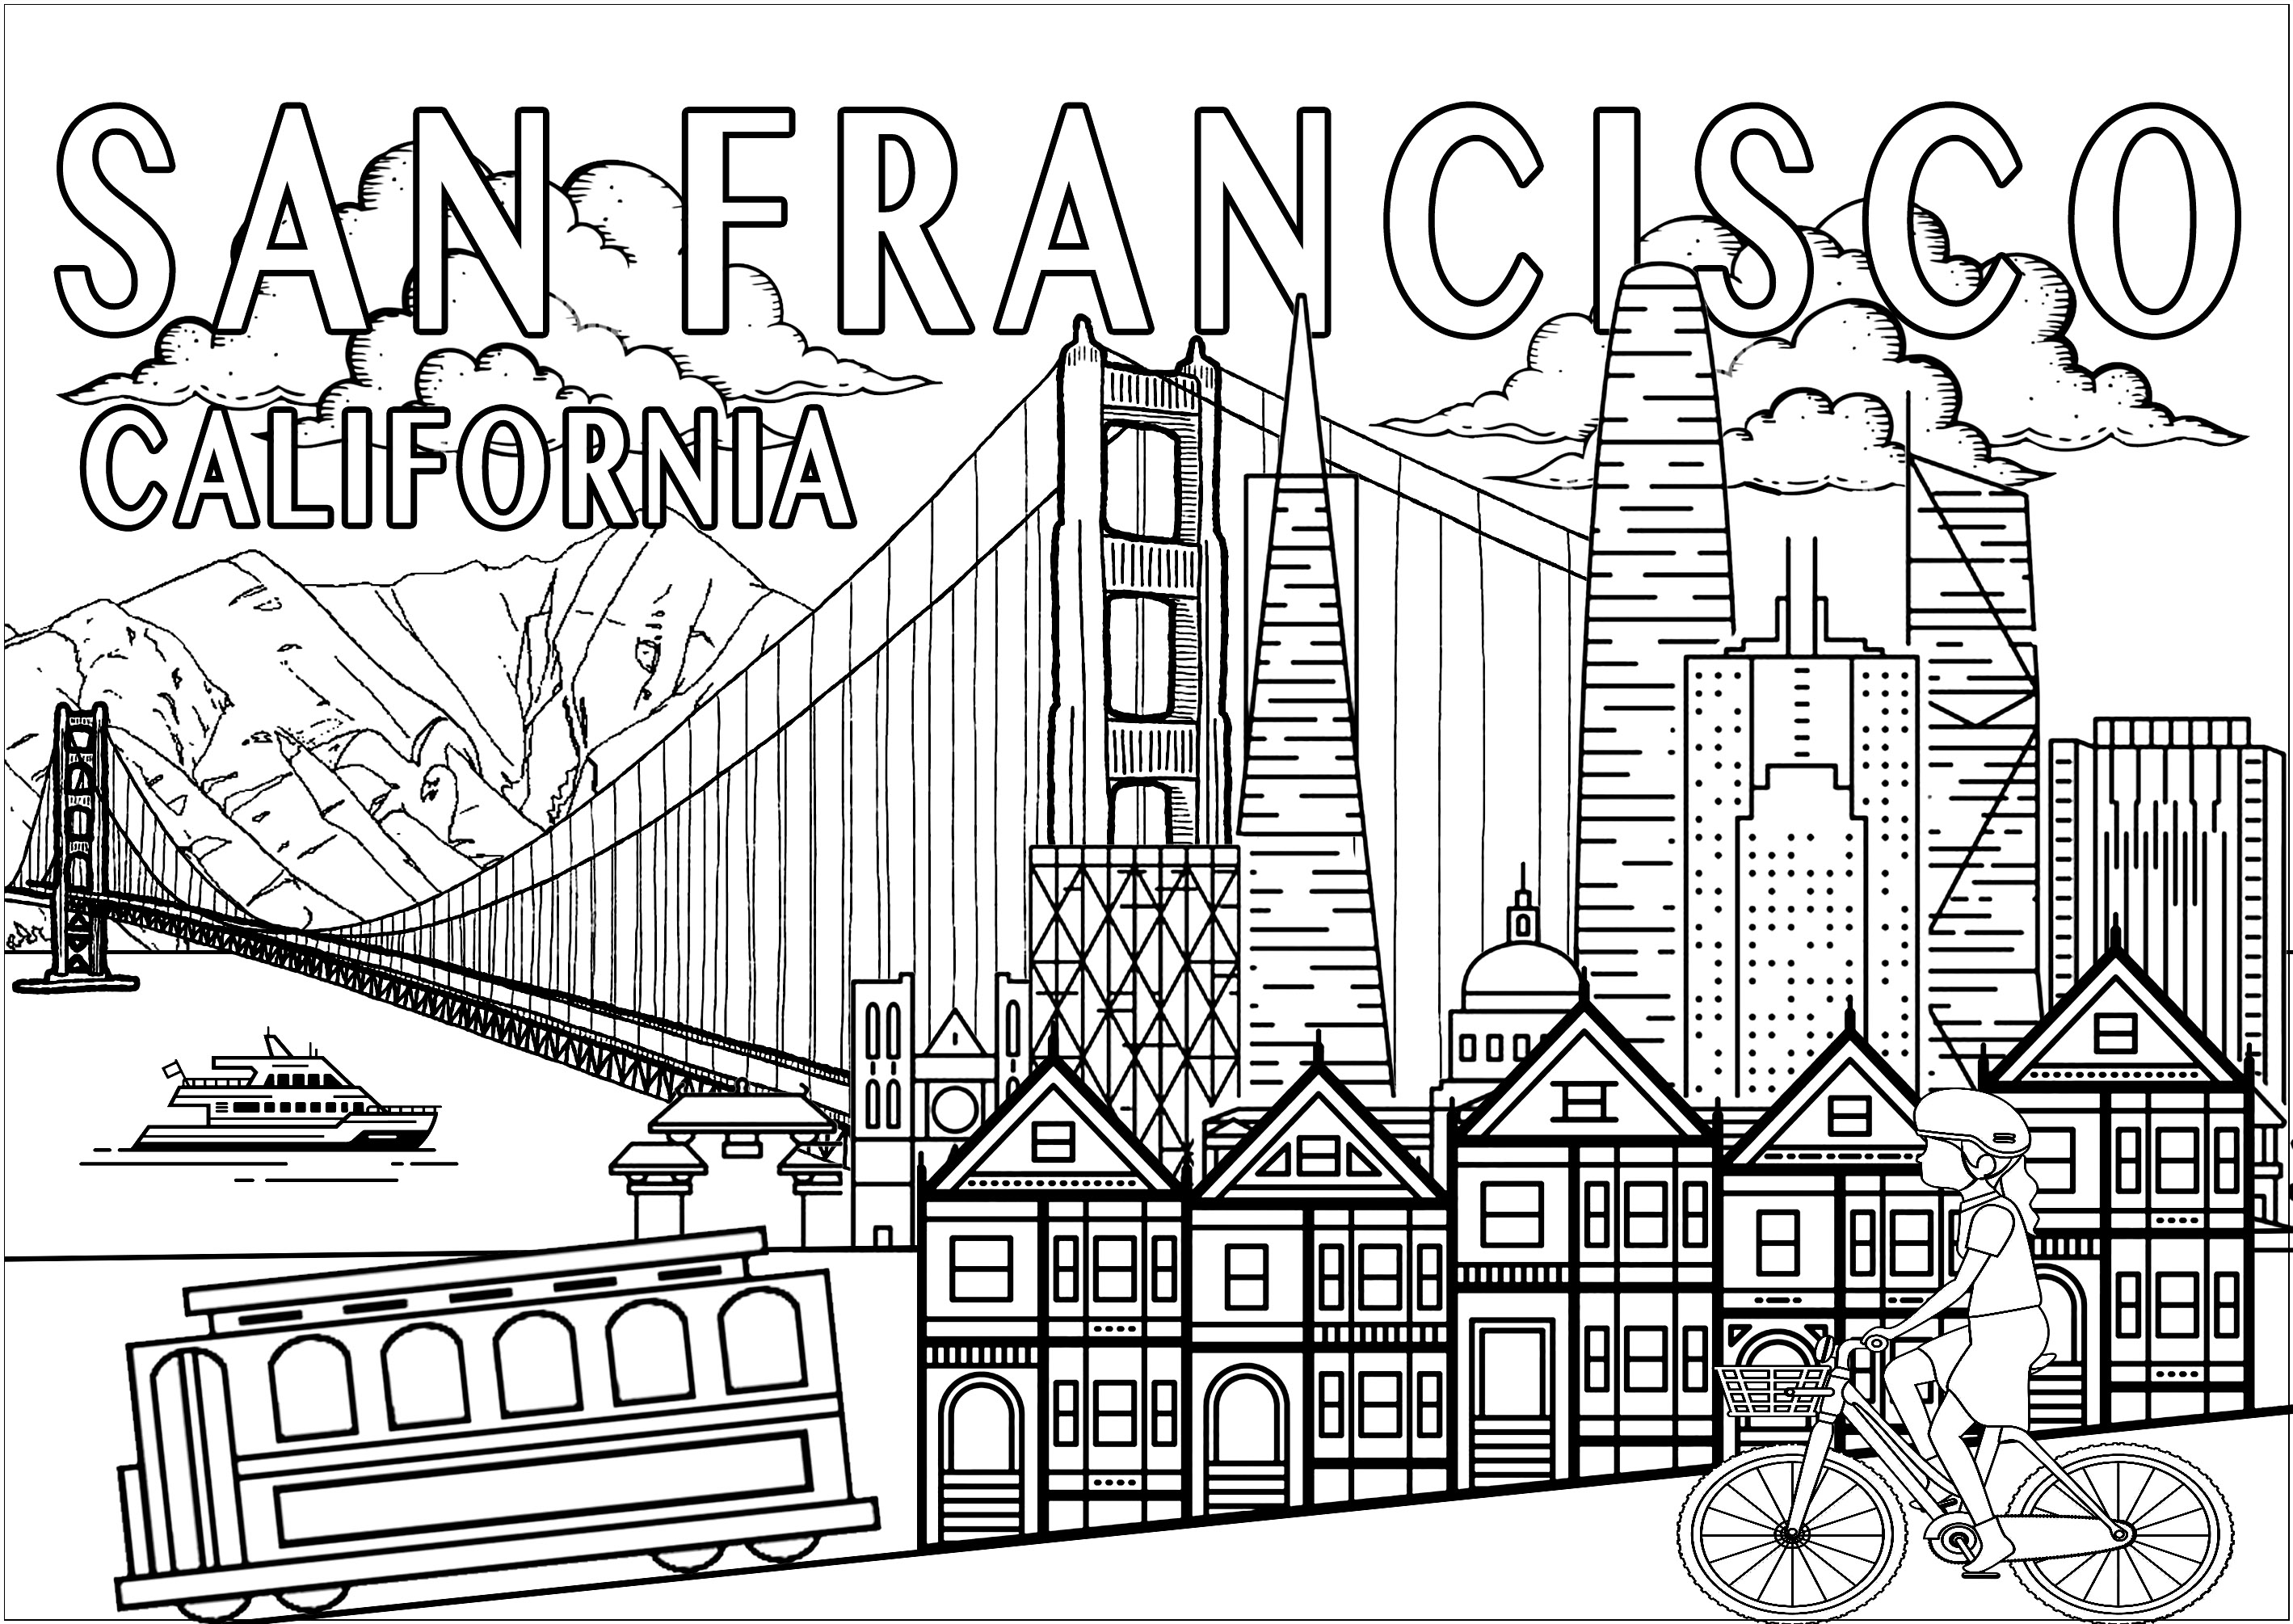 Malen Sie die wichtigsten Denkmäler und Symbole von San Francisco aus!. Das Golden Gate, die Painted Ladies, die Straßenbahn, die Skyline mit dem Coit Tower... San Francisco, die 'Stadt an der Bucht', ist eine der emblematischsten Städte der Vereinigten Staaten. Ein Muss auf jeder Reise nach Kalifornien!